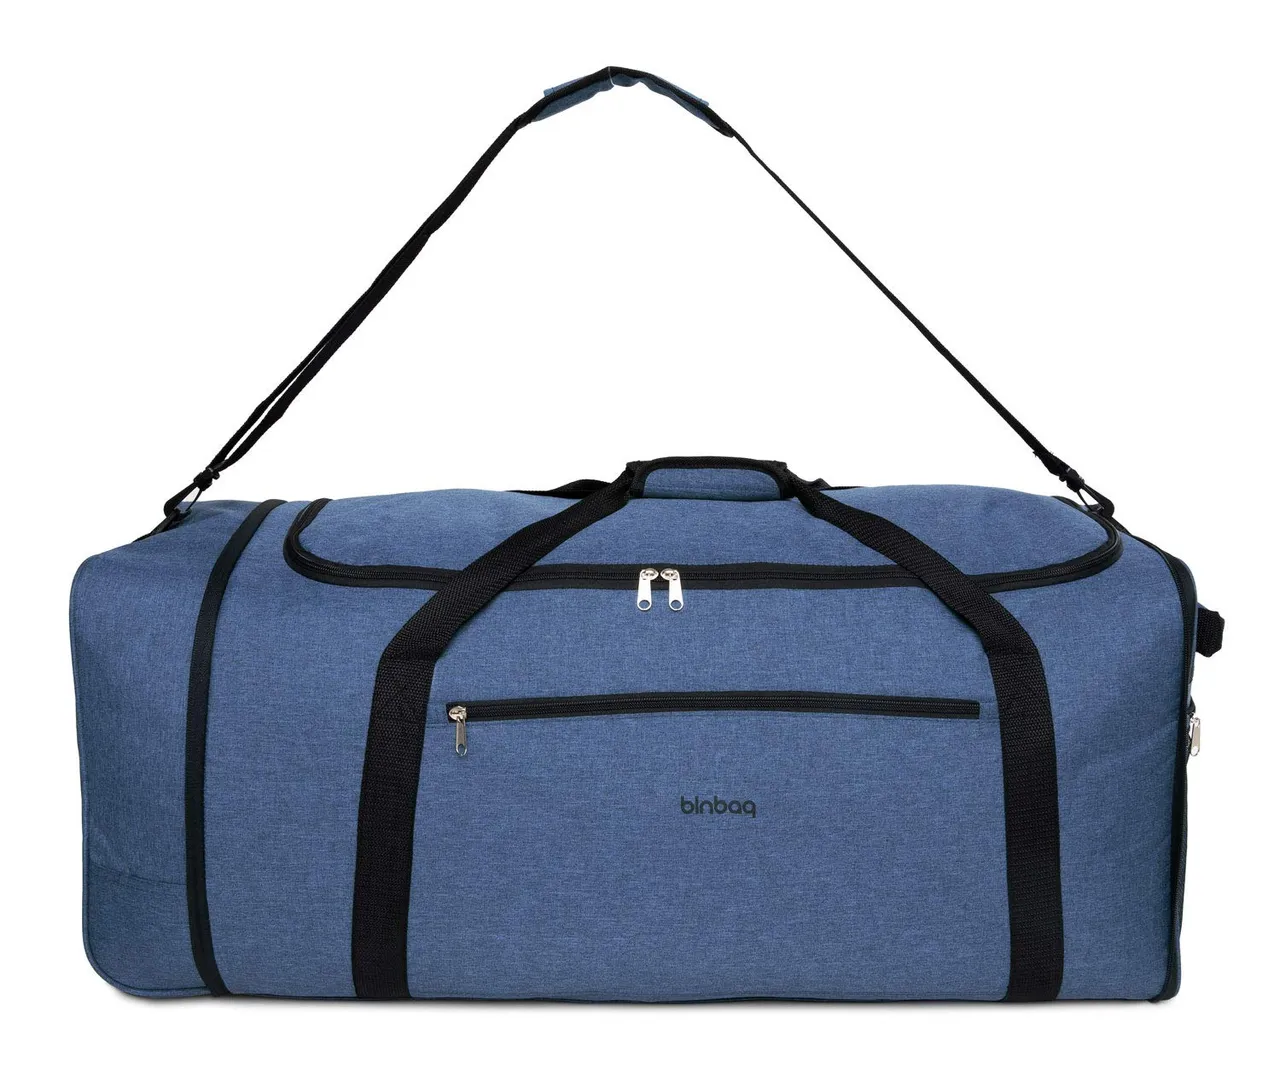 Blnbag M4 – Rollenreisetasche Weichgepäck Tasche